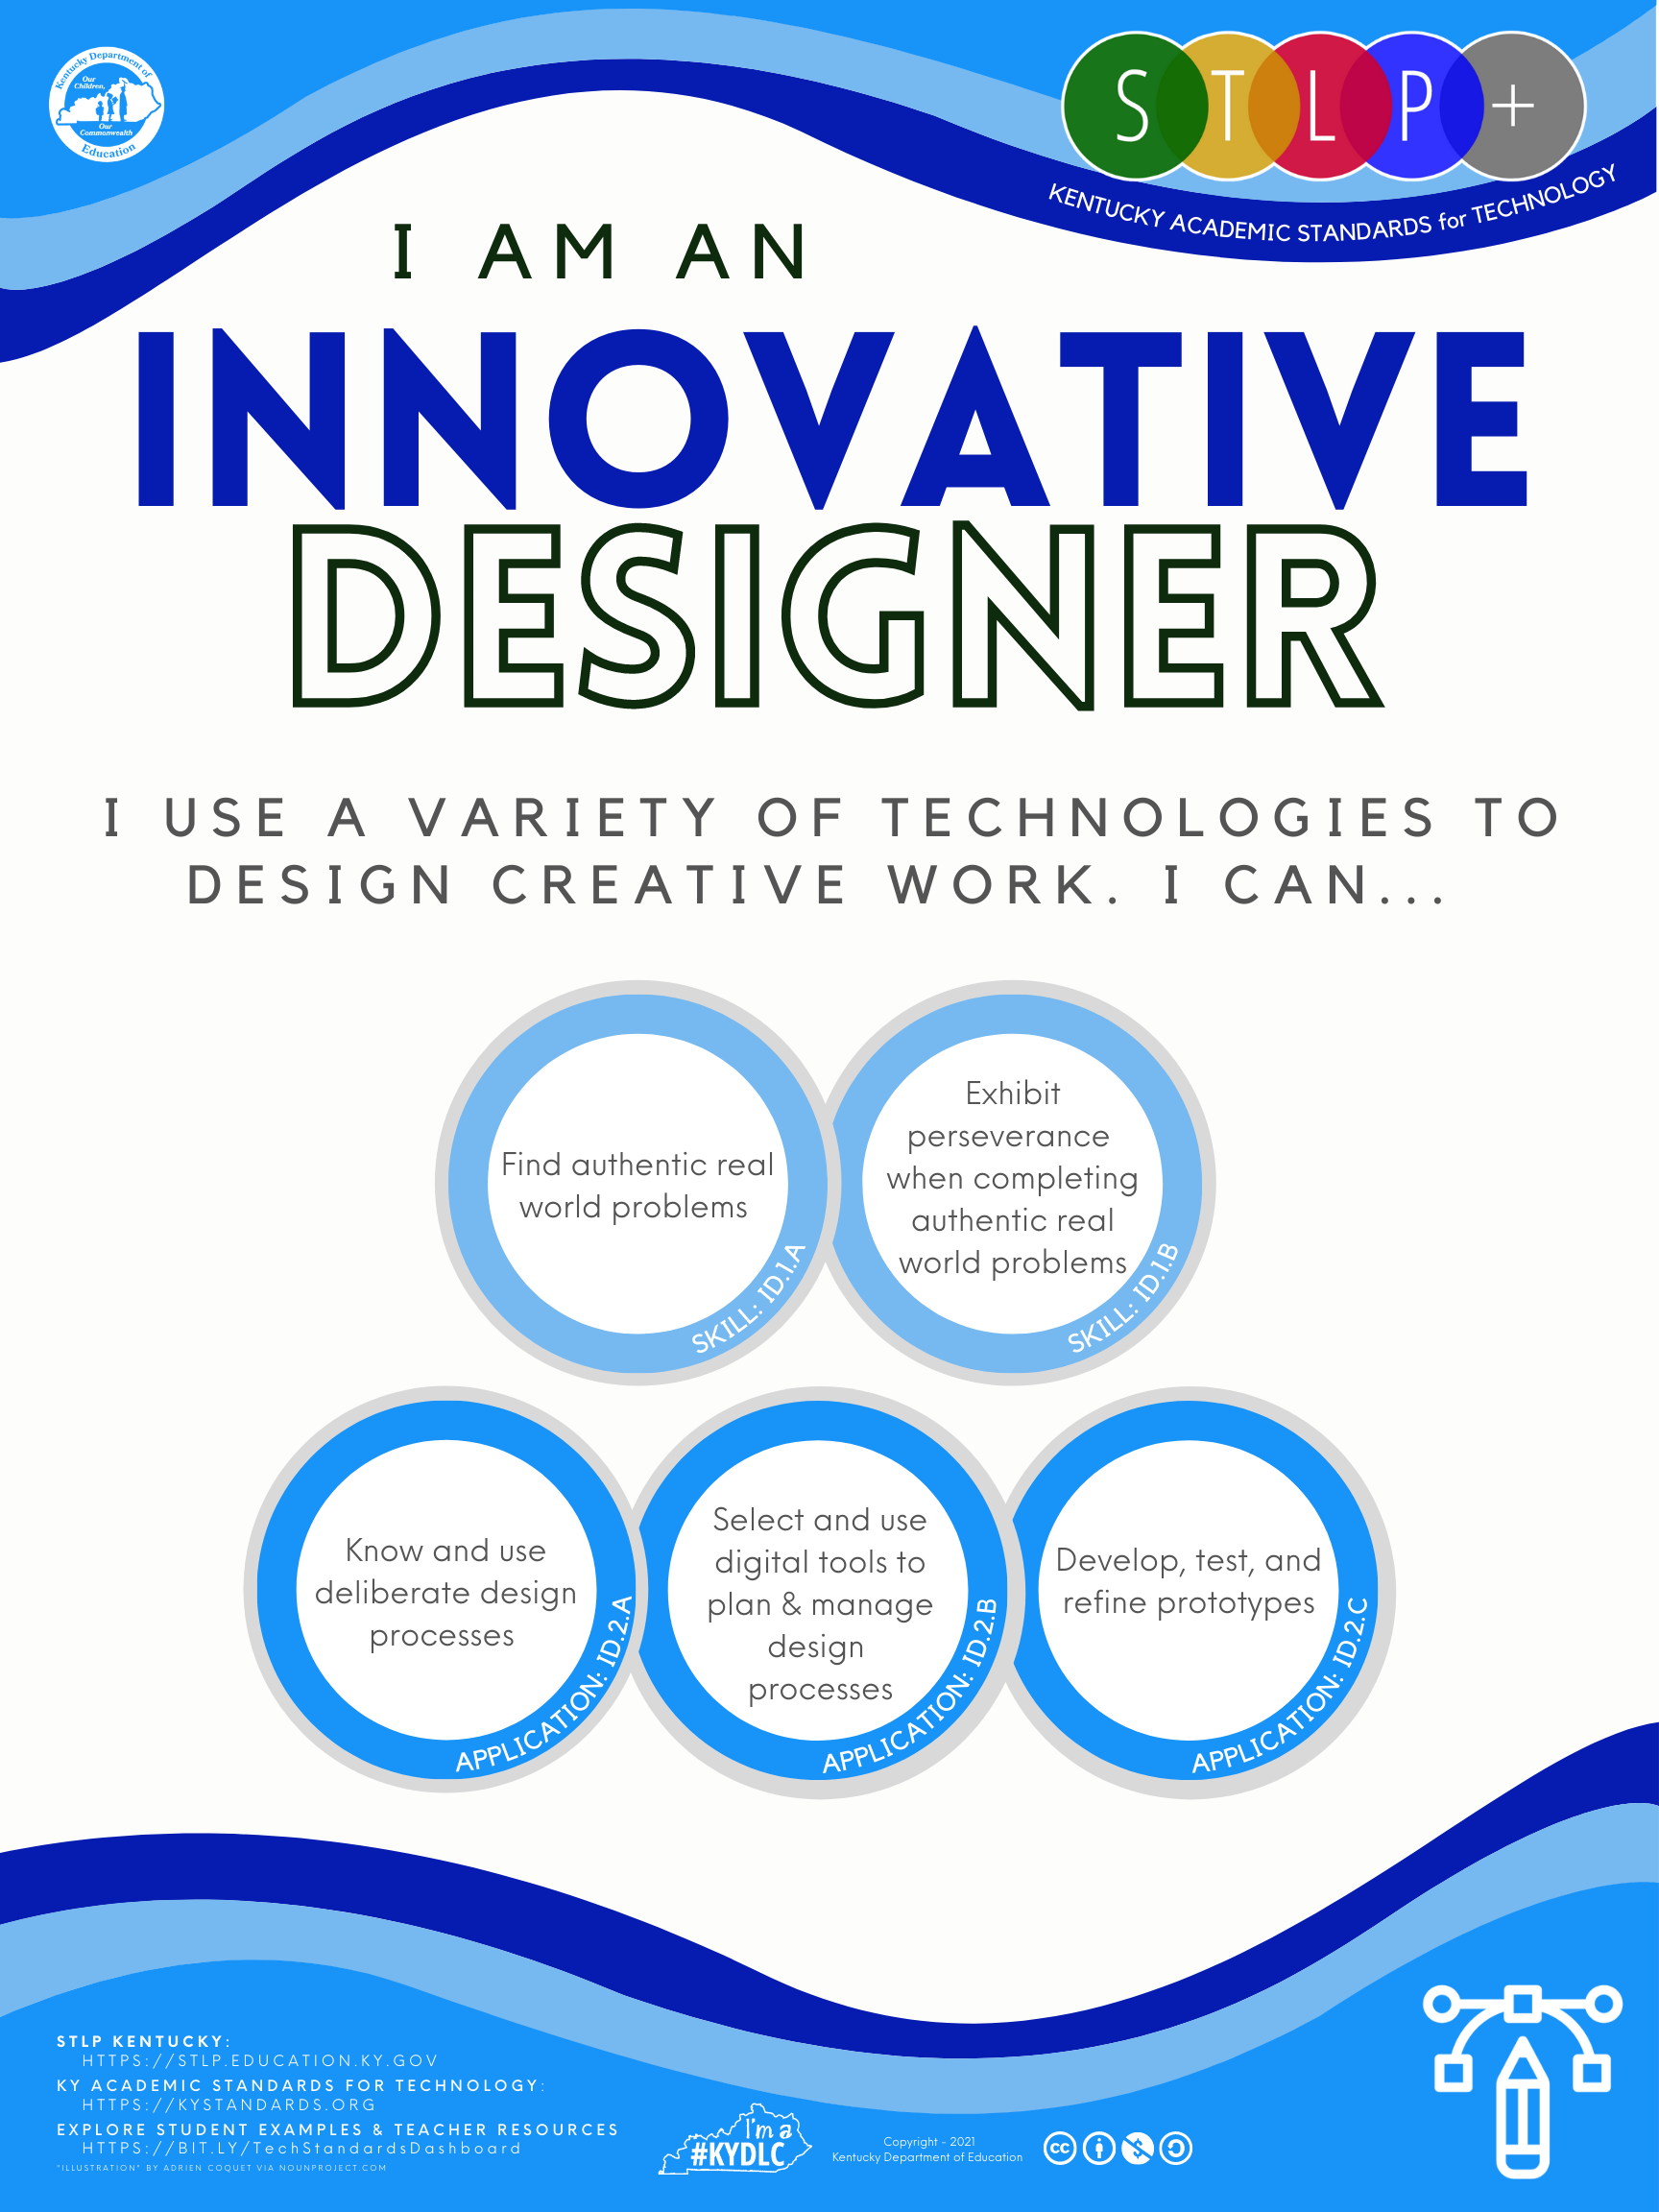 STLP ISTE Standards poster: Innovative Designer